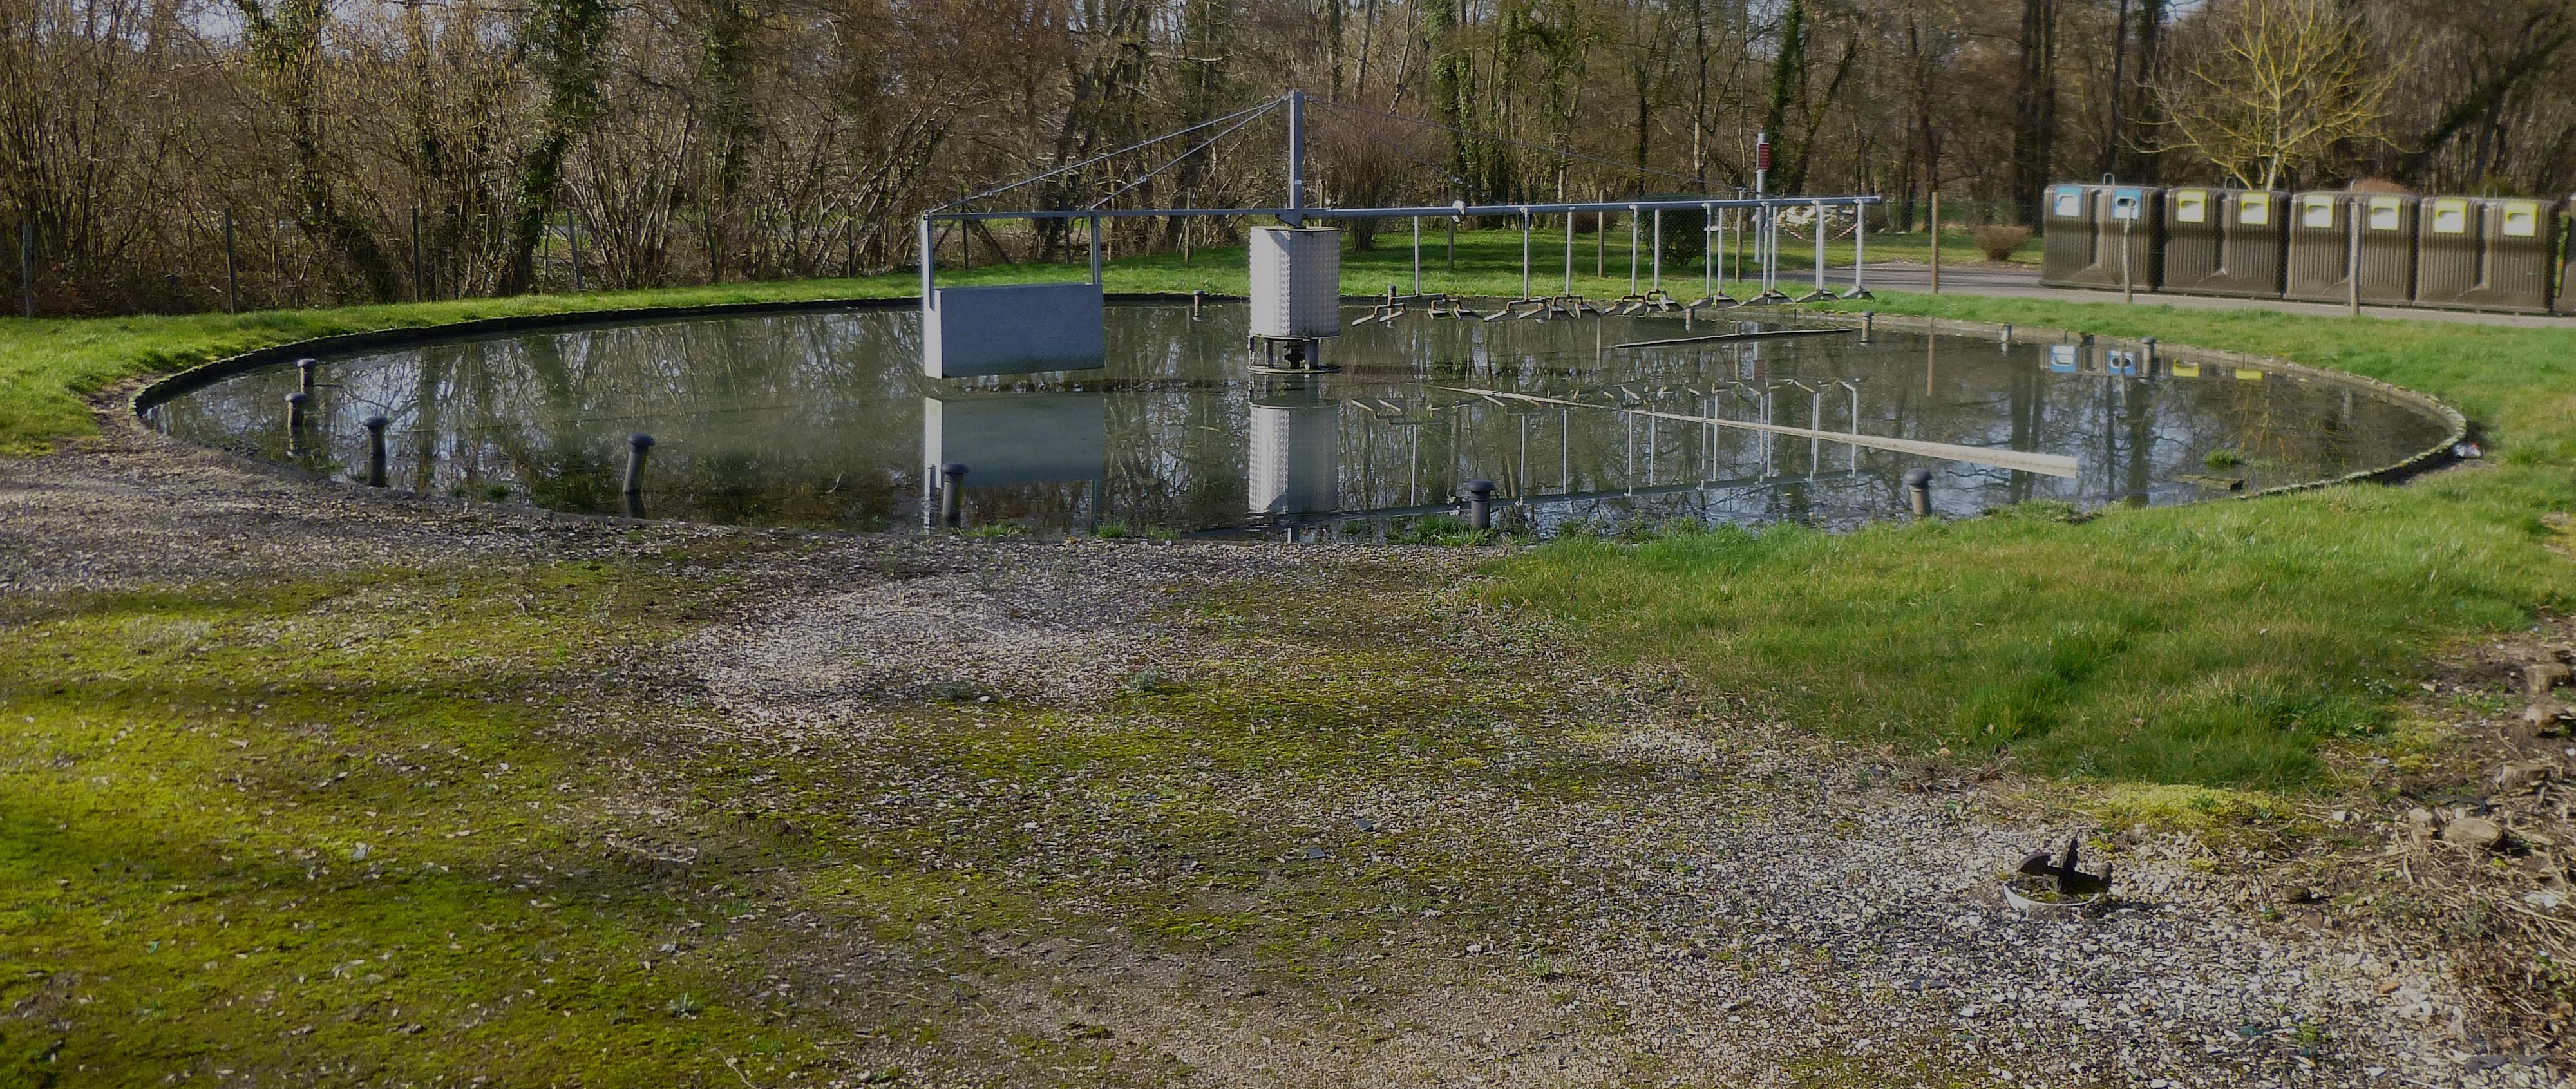 Station de traitement de l'eau, Tannerre-en-Puisaye, Yonne